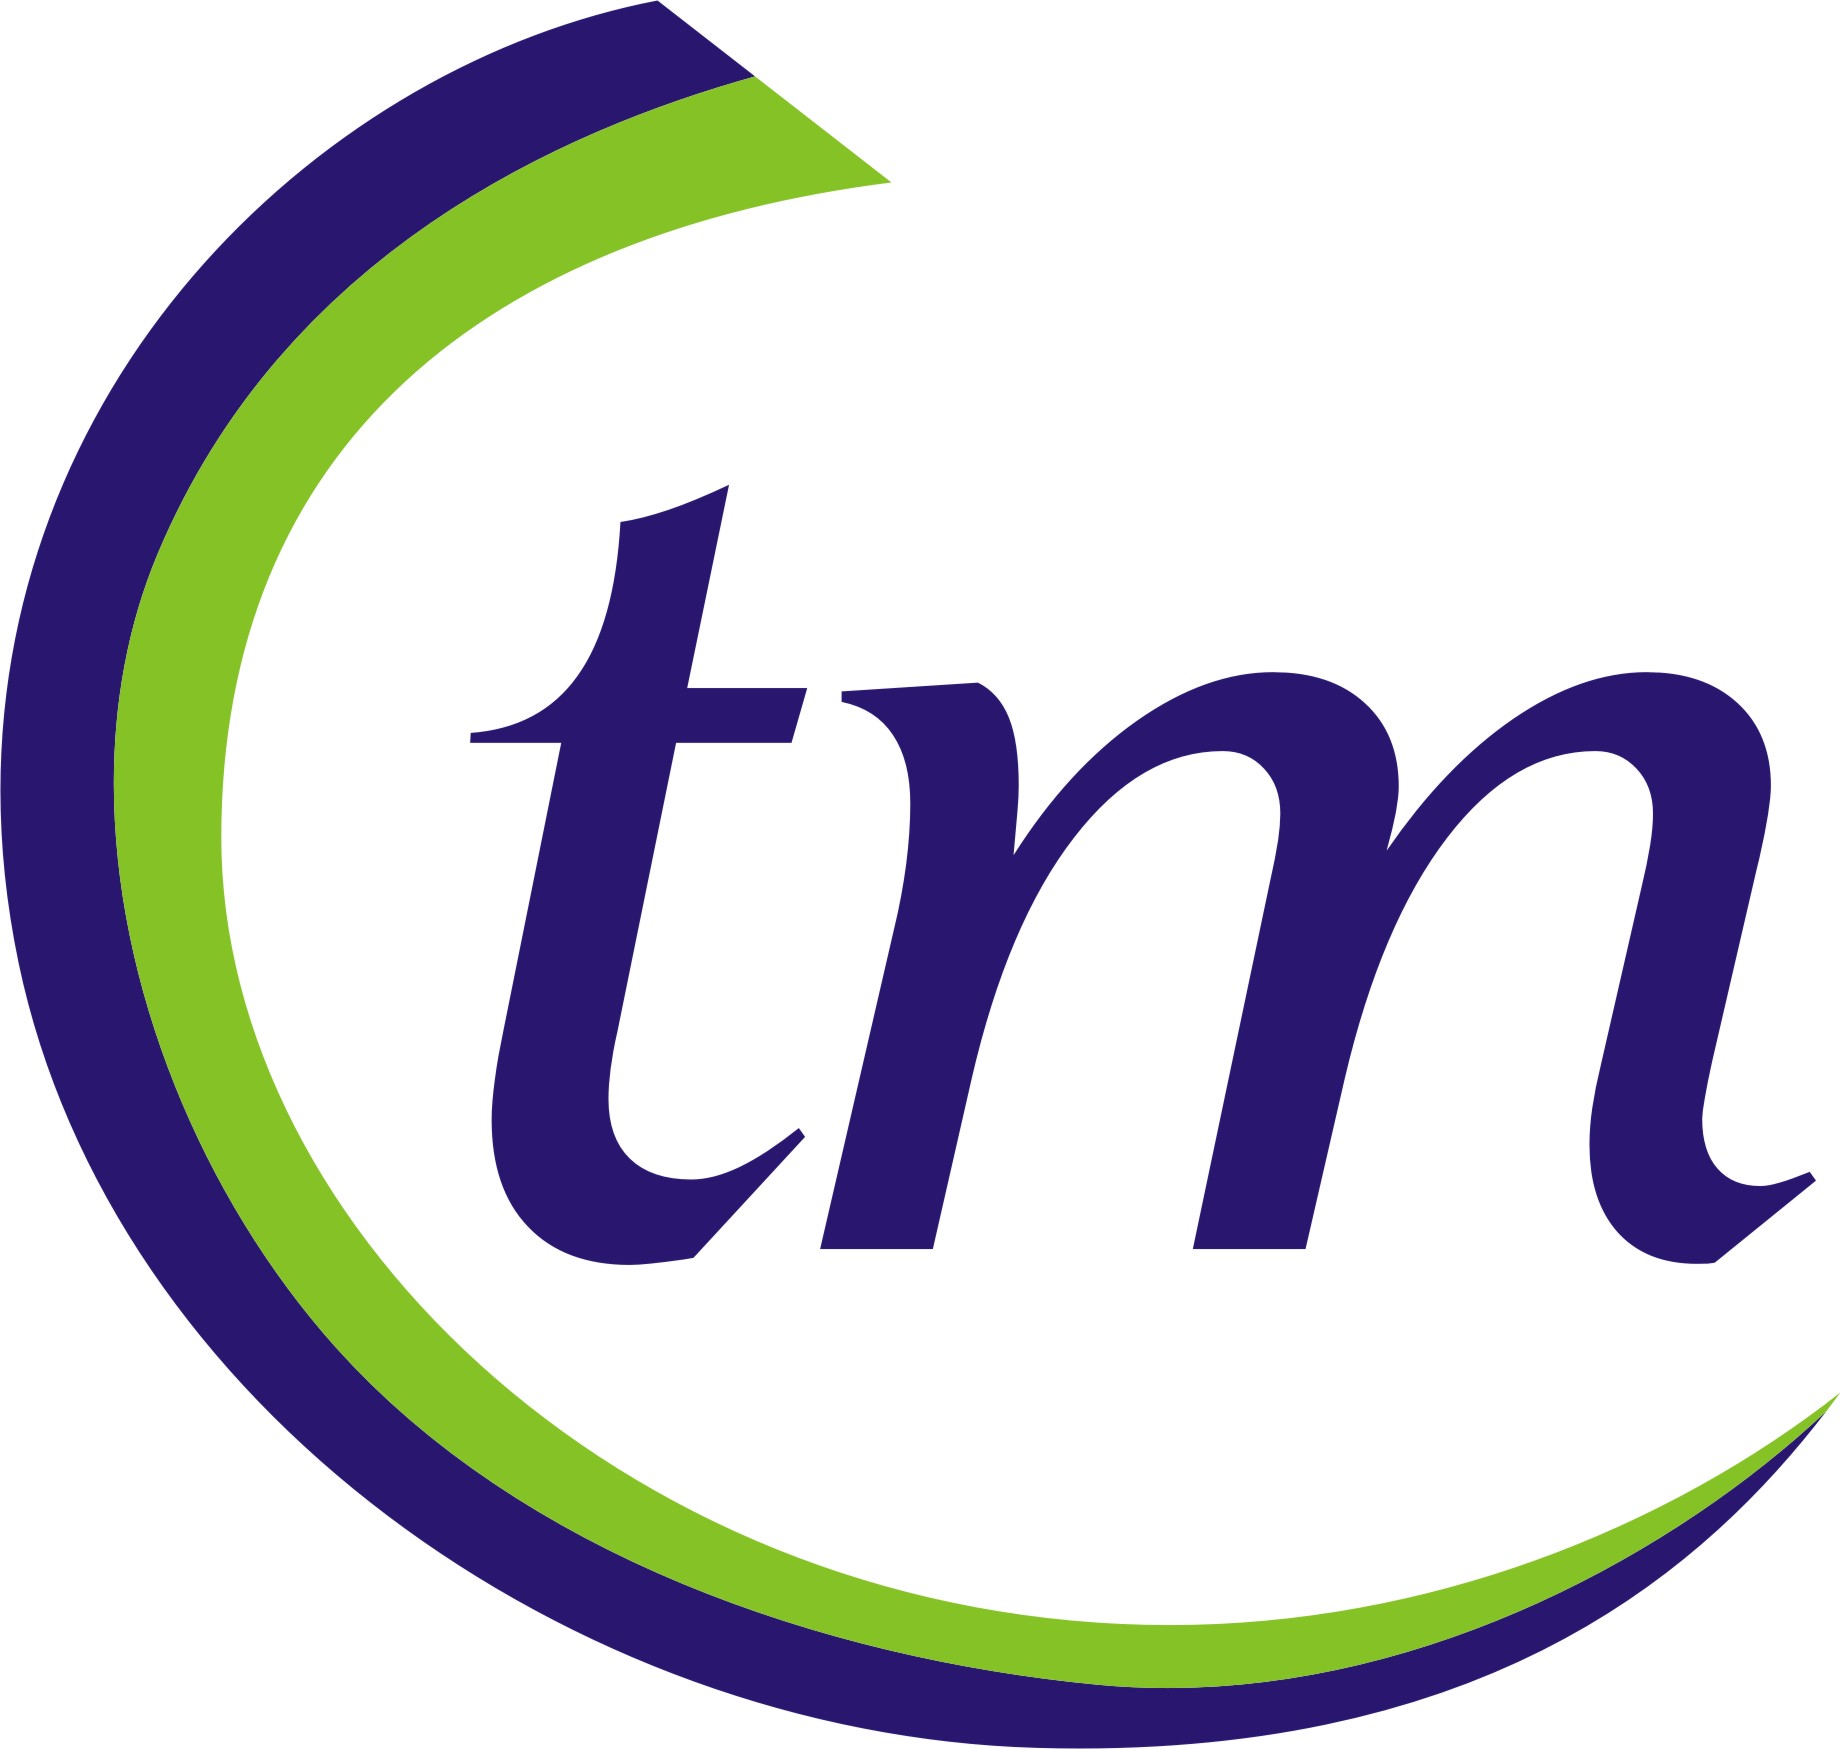 Clip TM Logo | About of logos